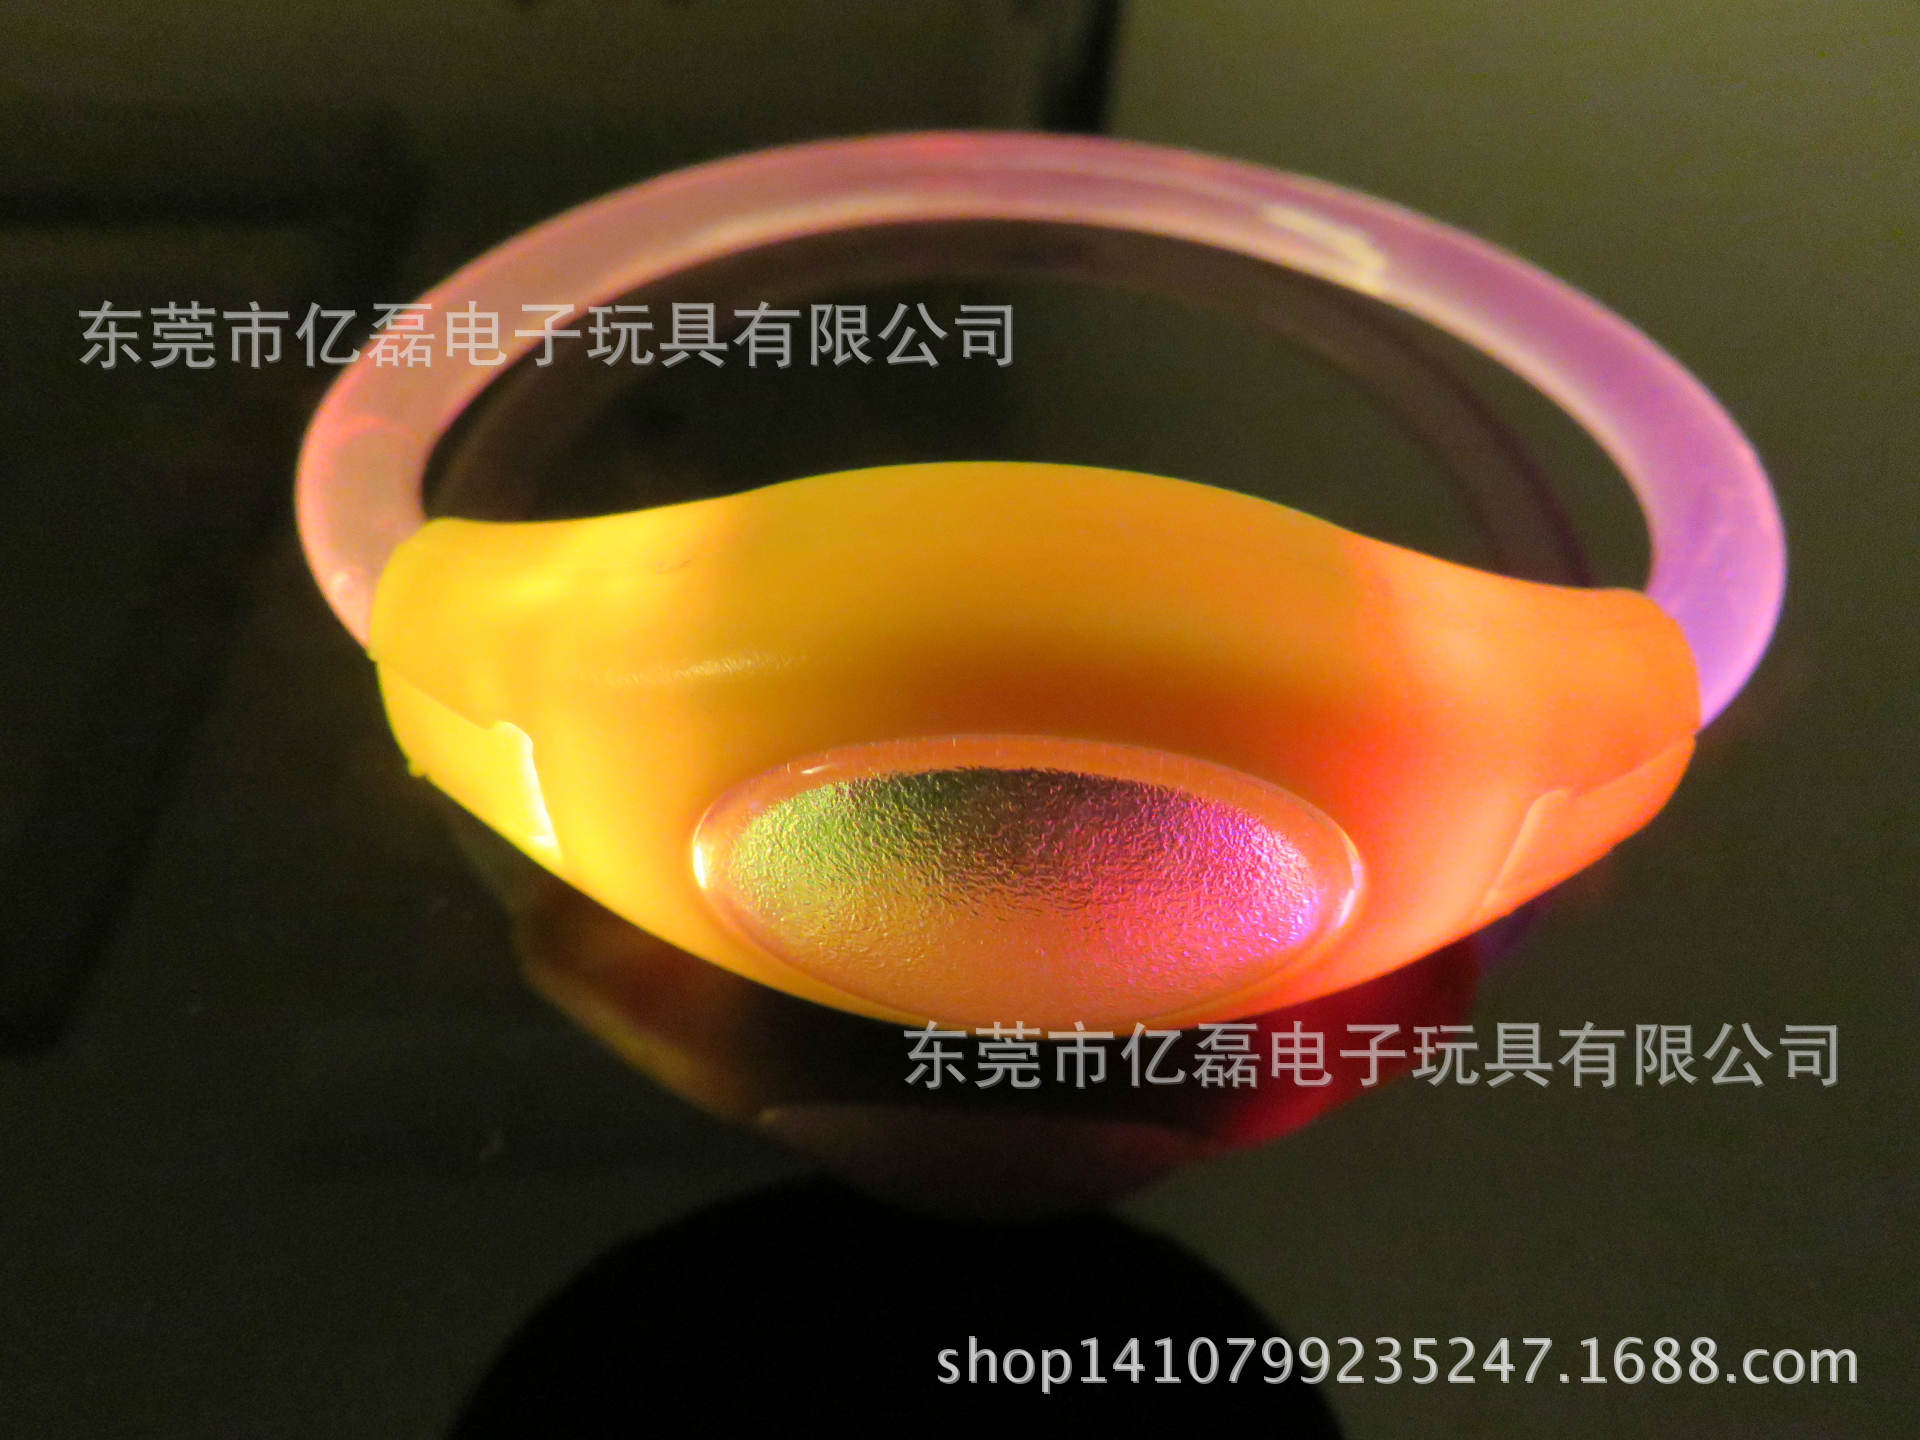 厂家直接销售发光手环,PVC发光手环,环保,CE认证